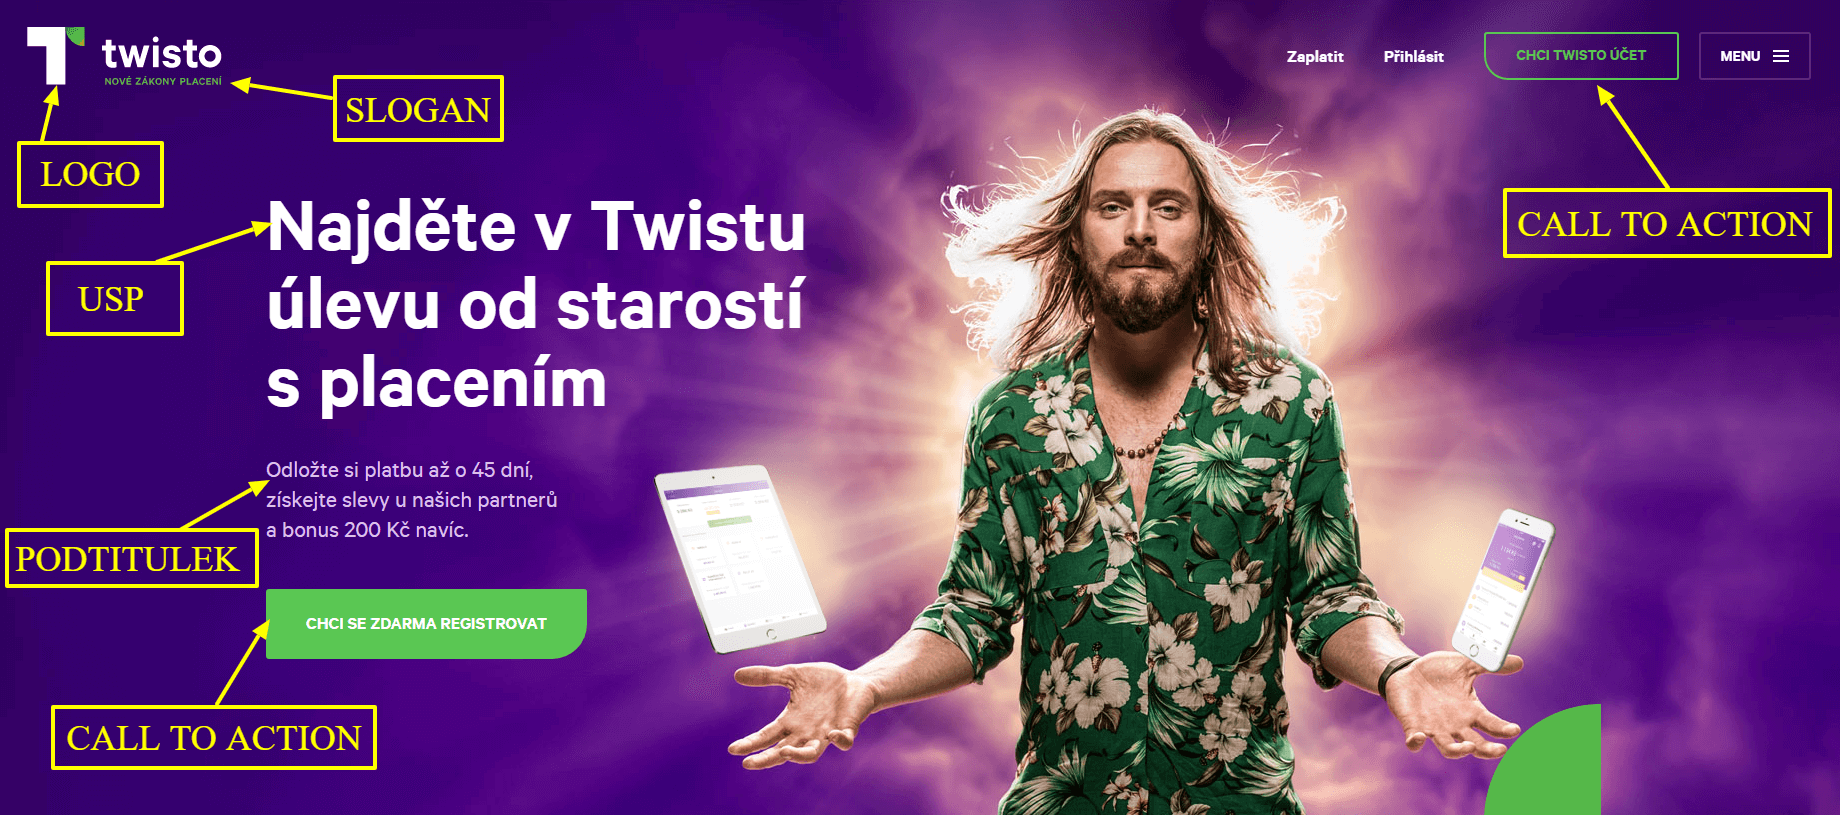 Landing page božího webu Twisto